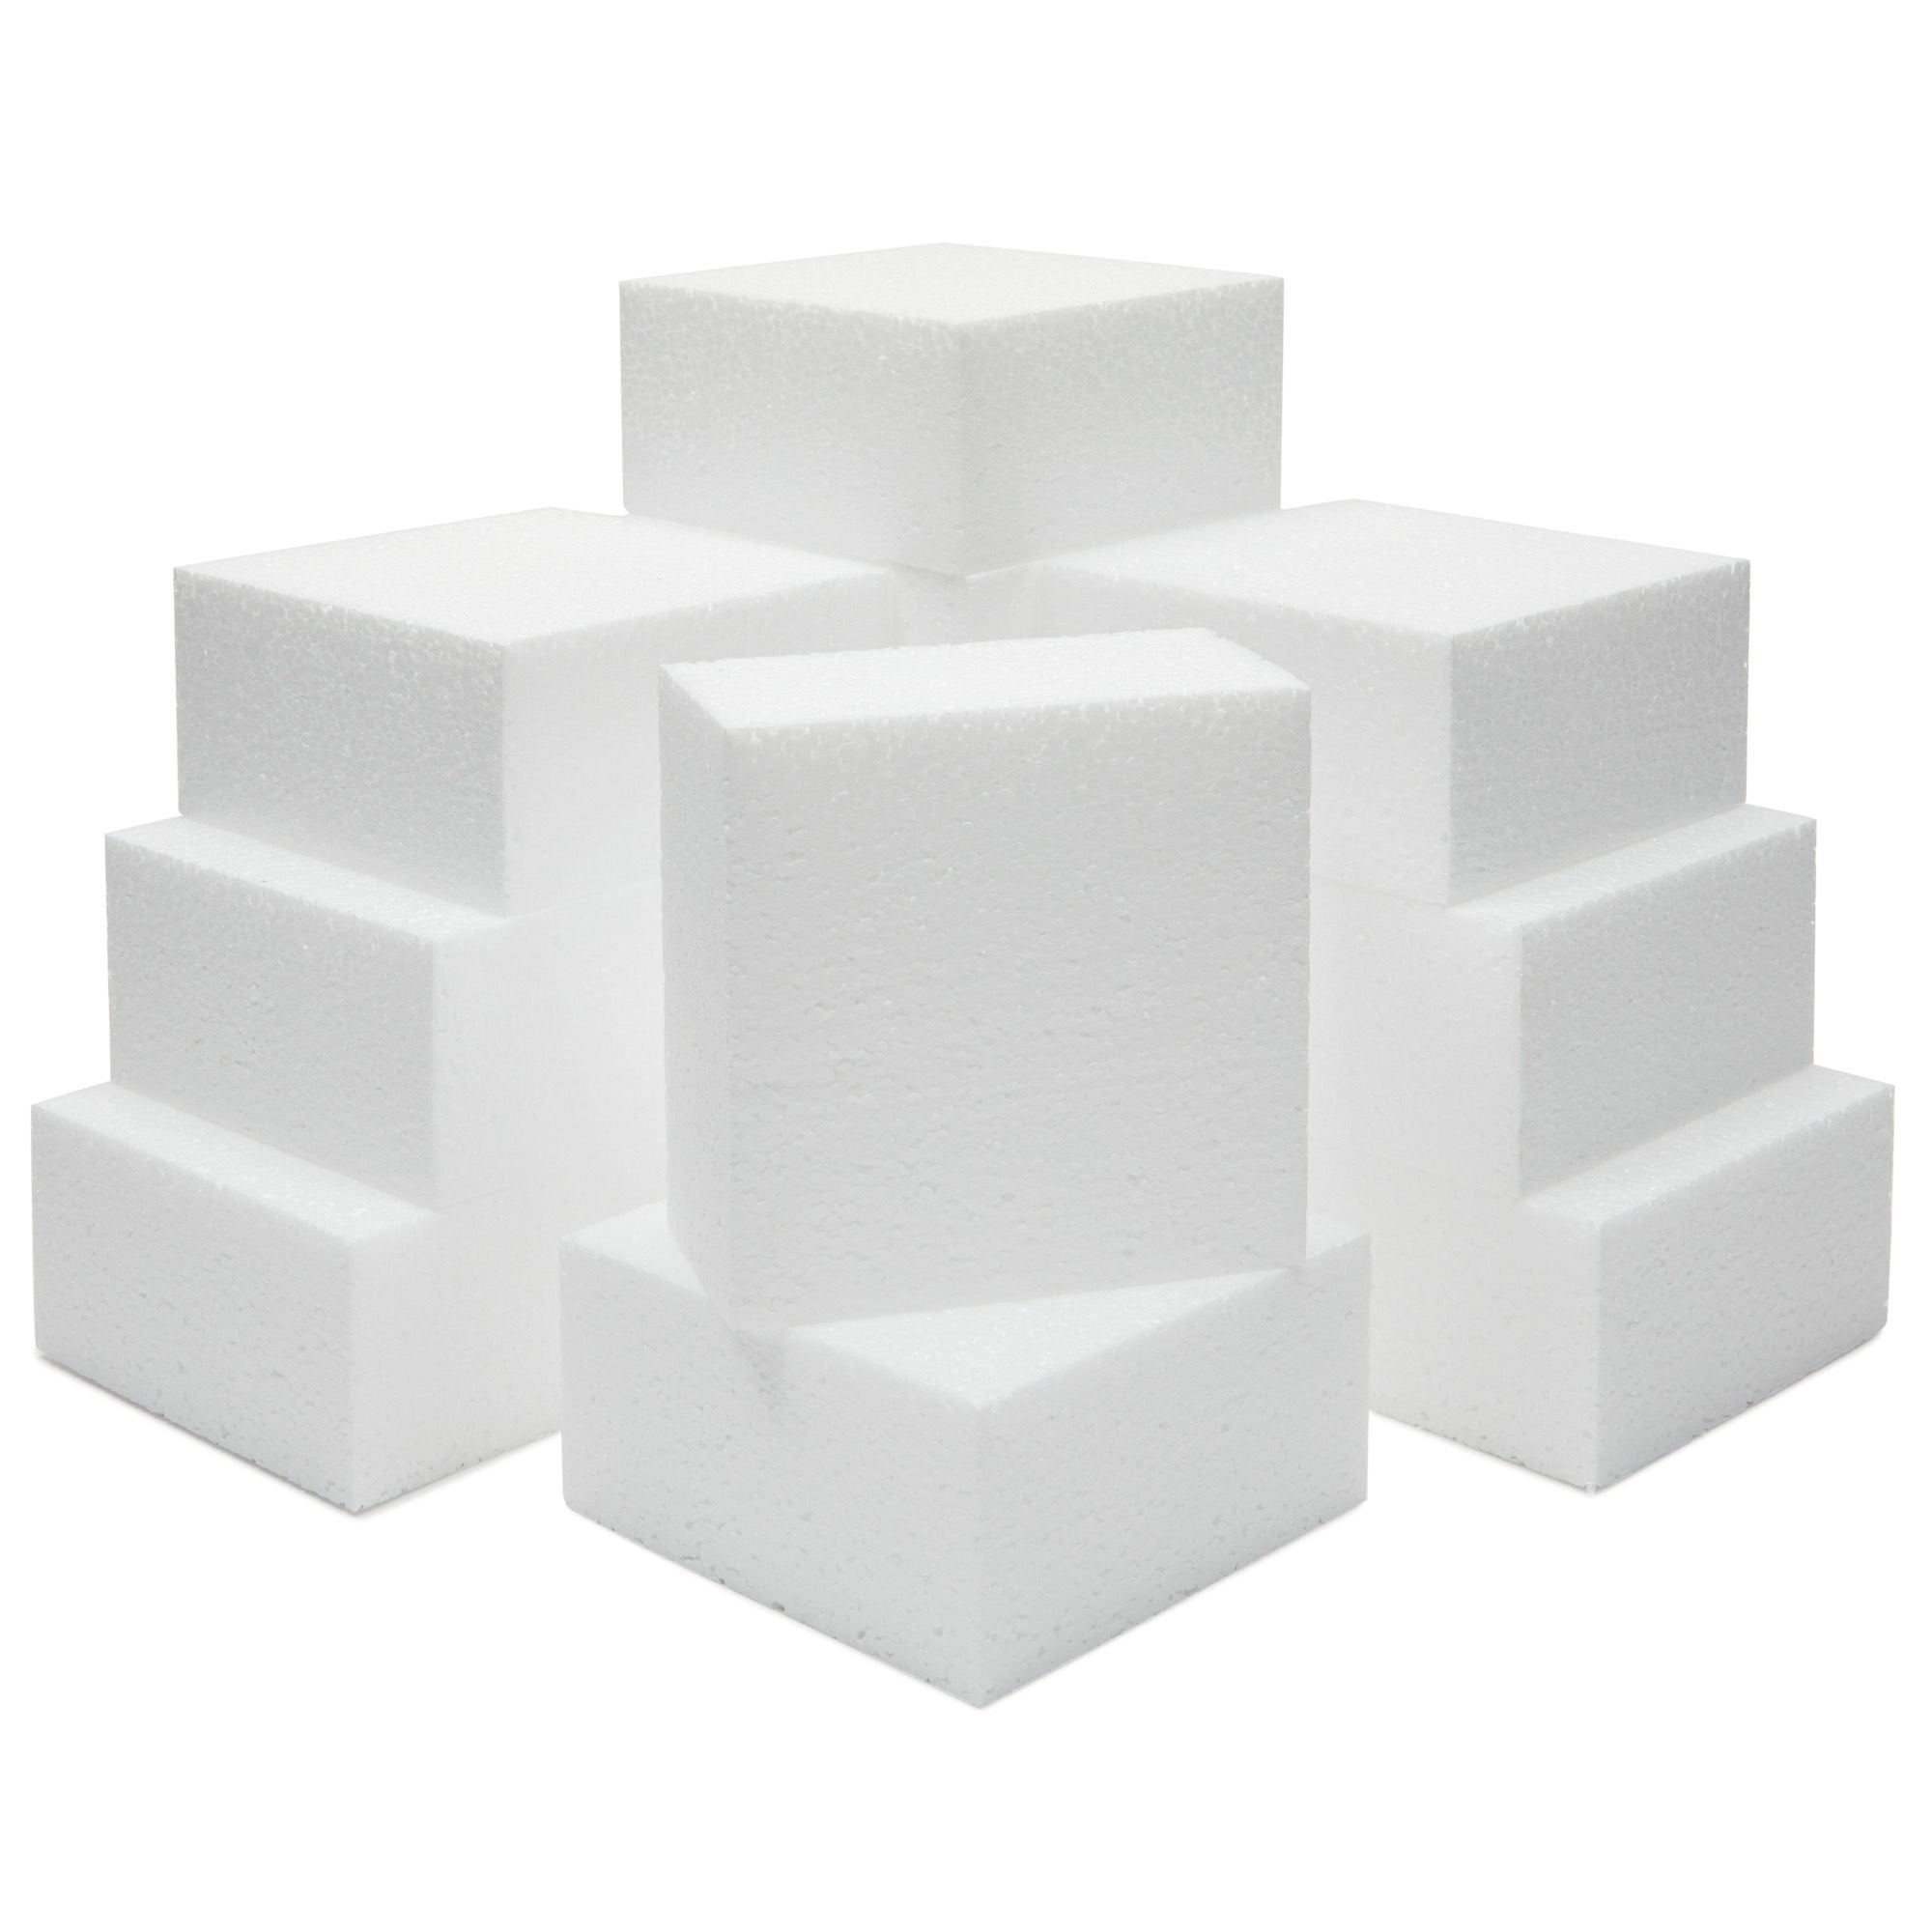 4x2 Rectangle Unit Building Block